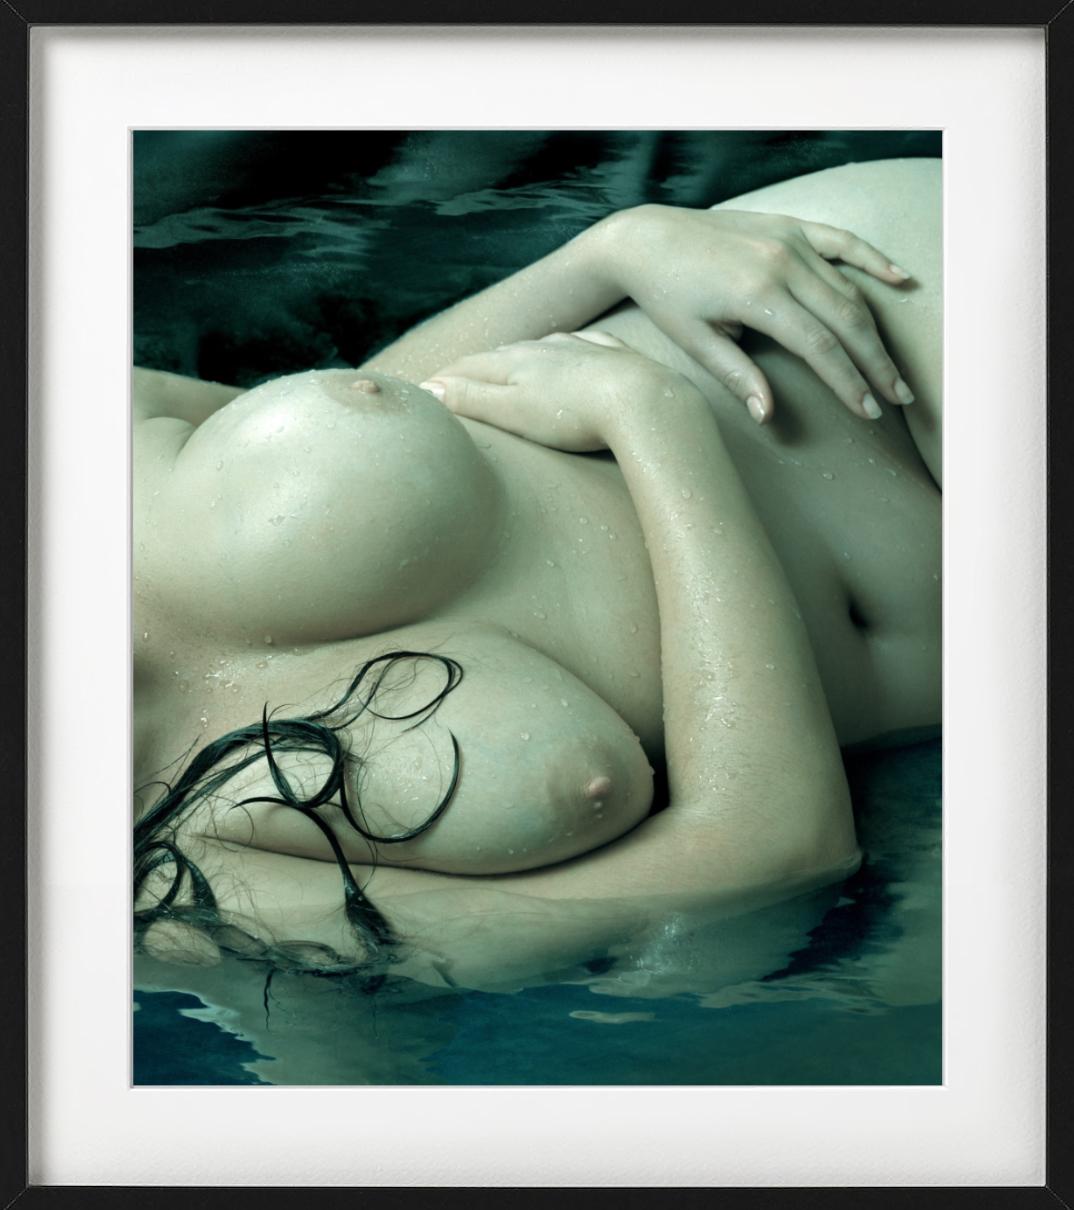 Jennifer Breasts - green lit nude torso in Water, fine art photgraphy, 2011 - Photograph by Albert Watson